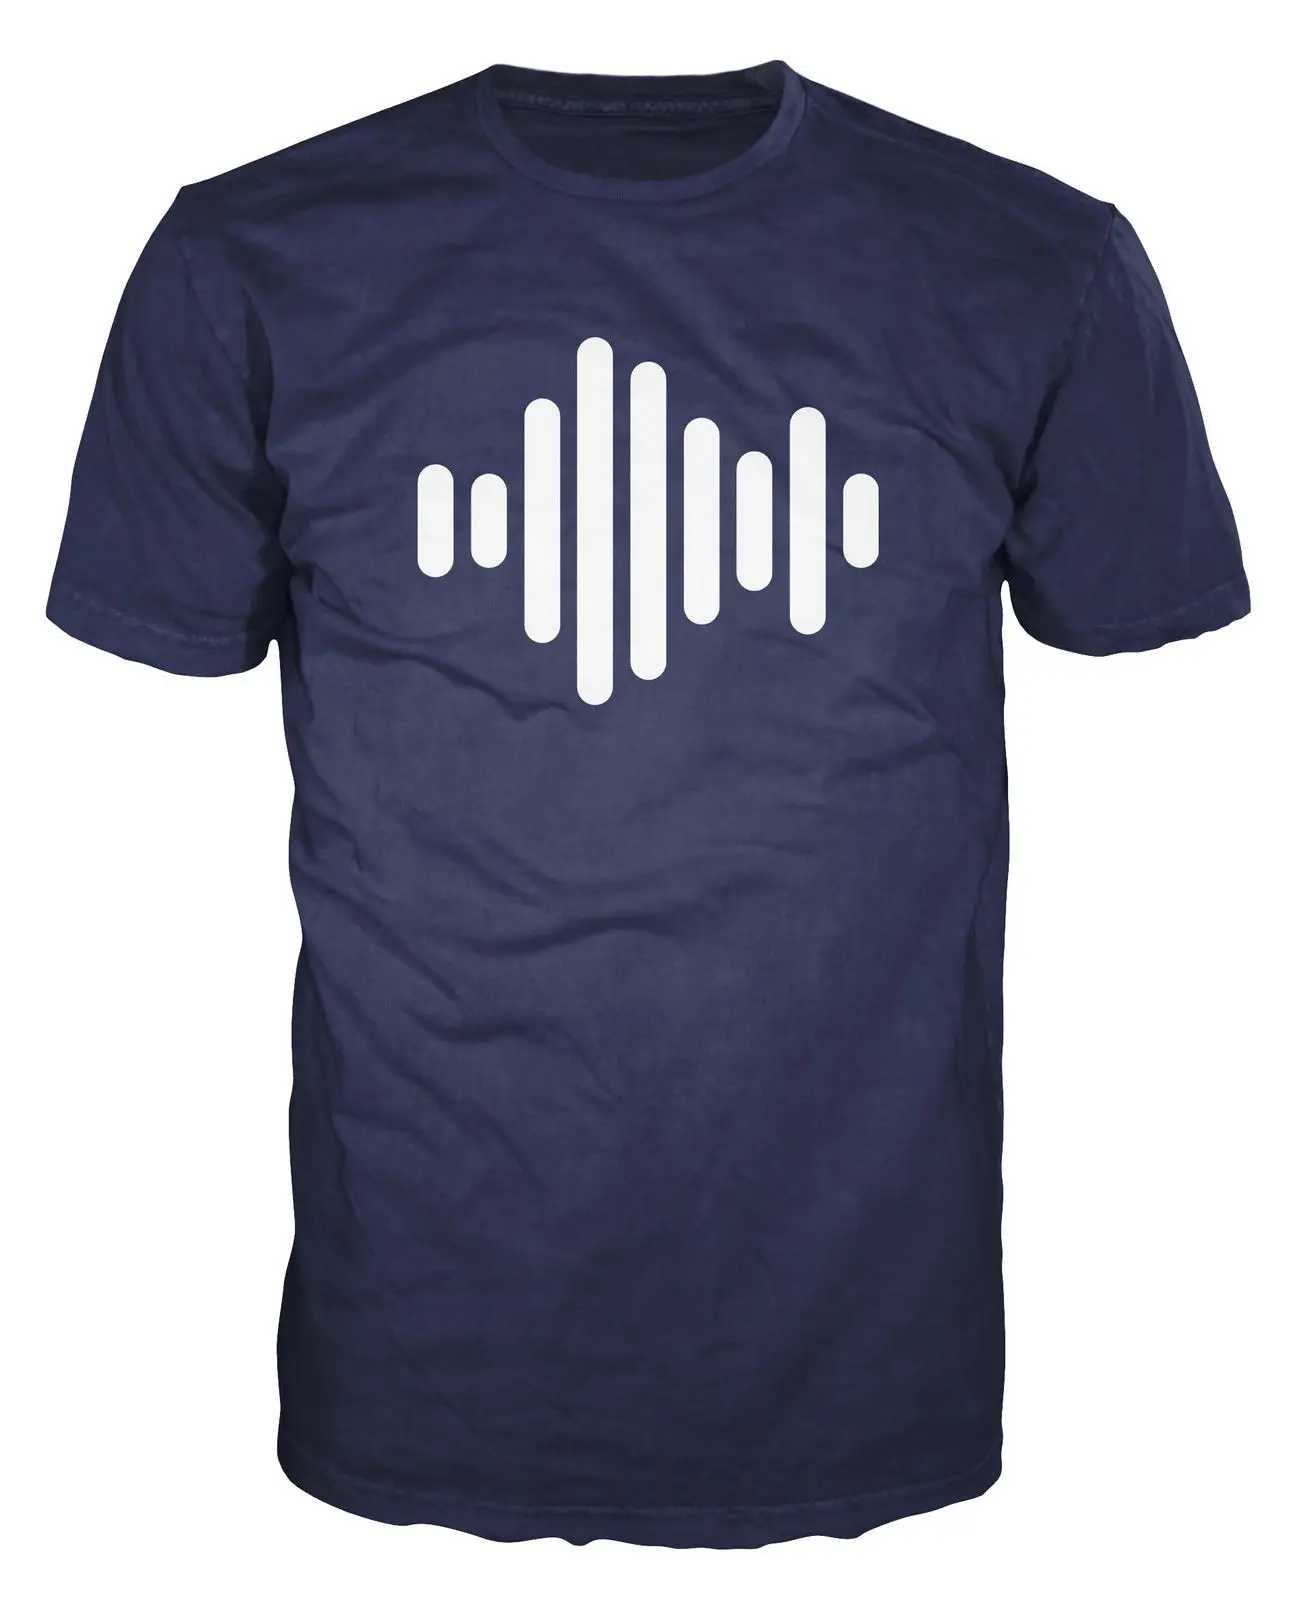 Звук символ мода диджей музыкальный продюсер эквалайзер волна Beat редактор футболка